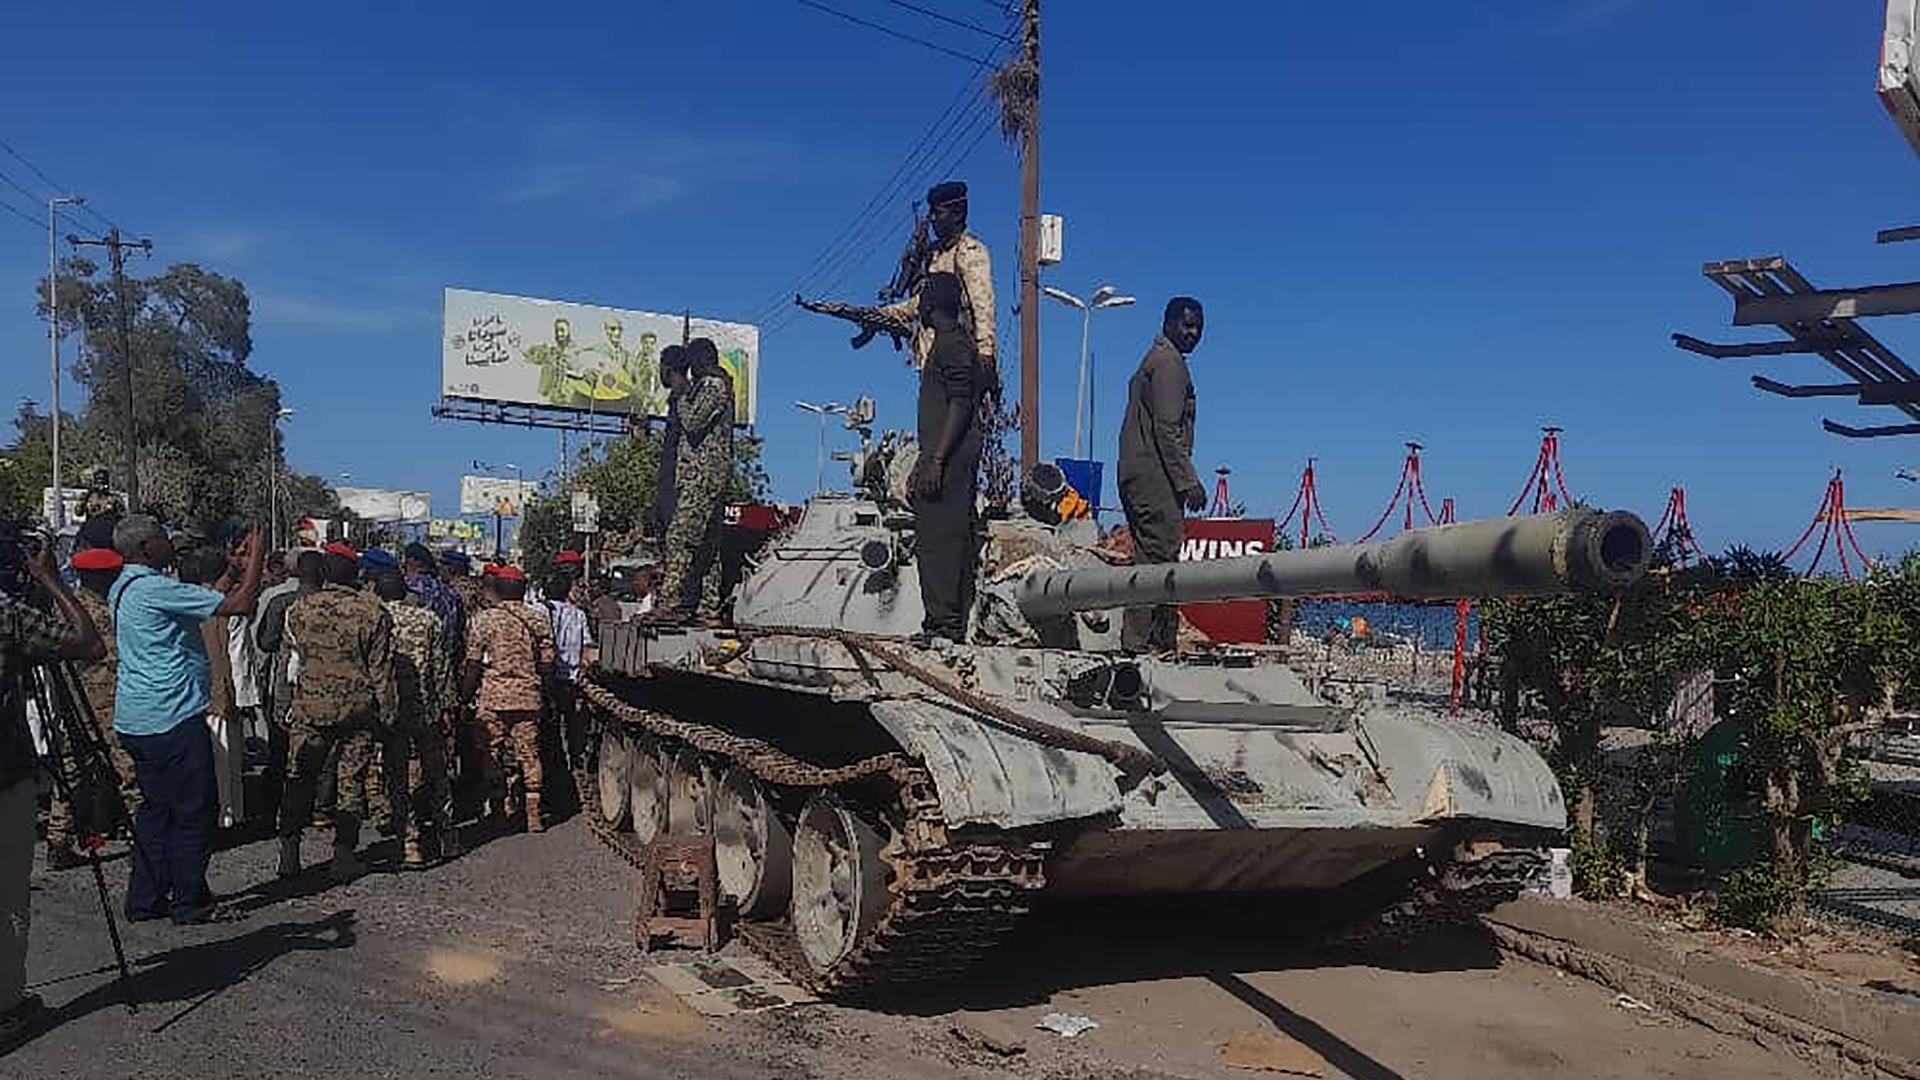 Bewaffnete Männer in Militärjacken stehen auf einem Panzer.